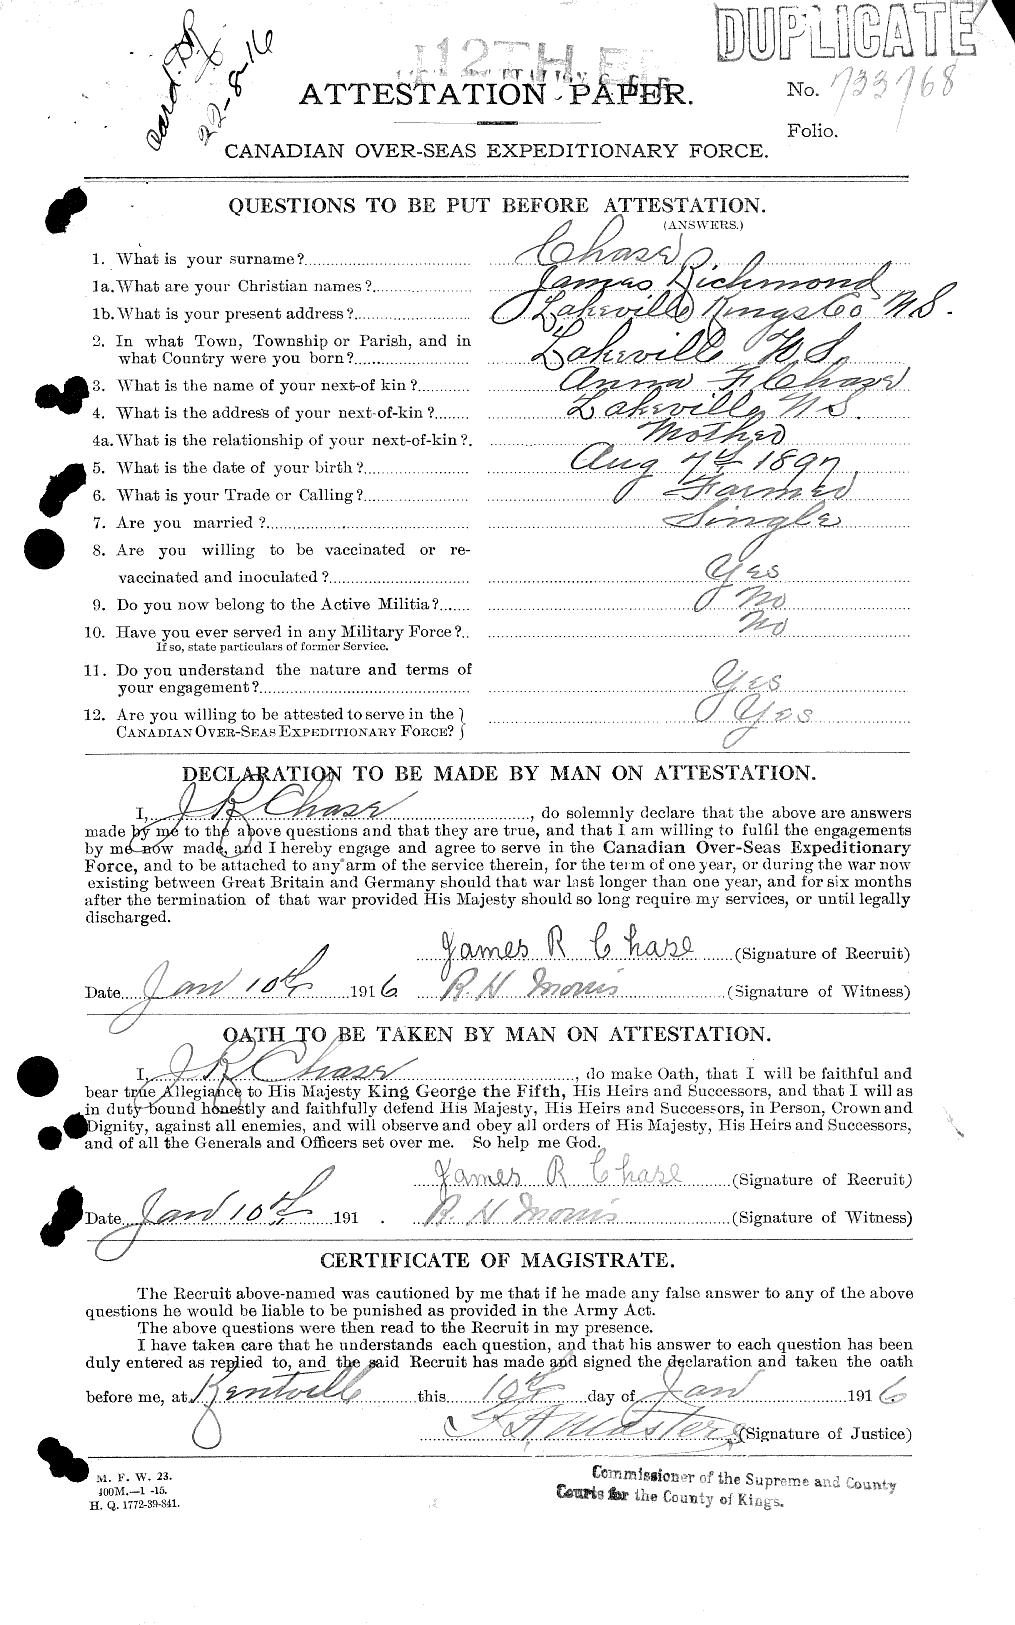 Dossiers du Personnel de la Première Guerre mondiale - CEC 016031a